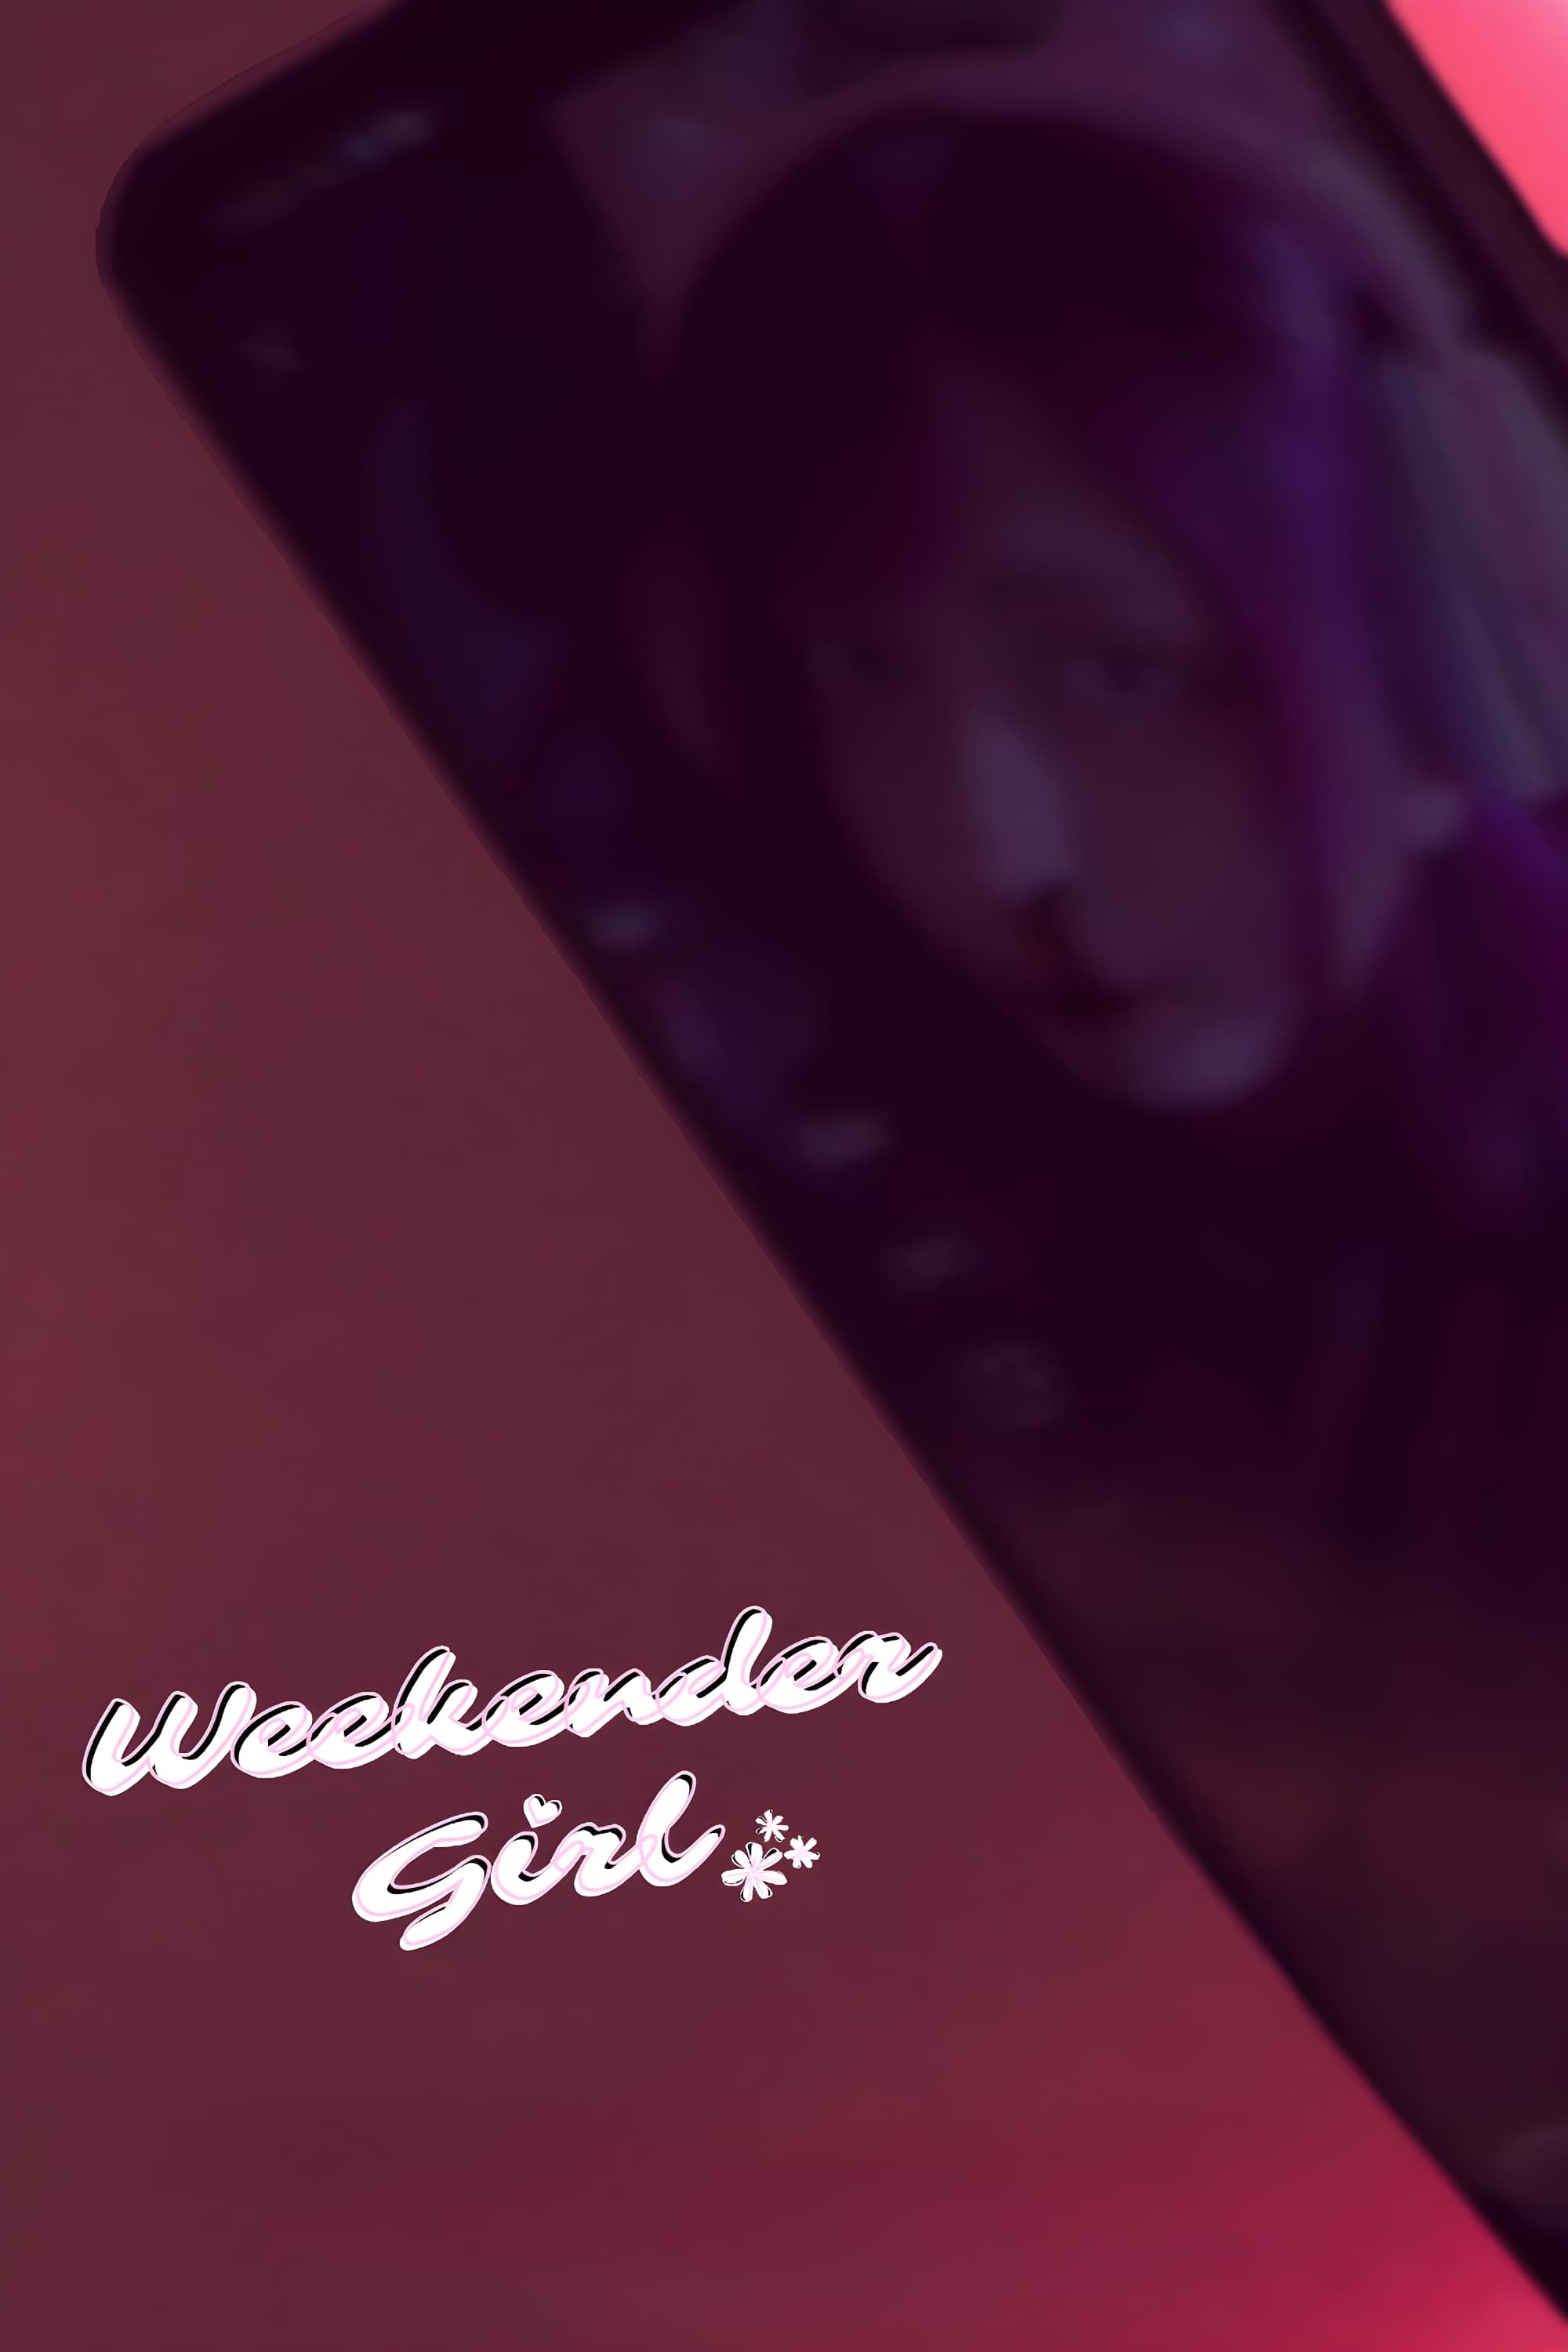 Weekender Girl